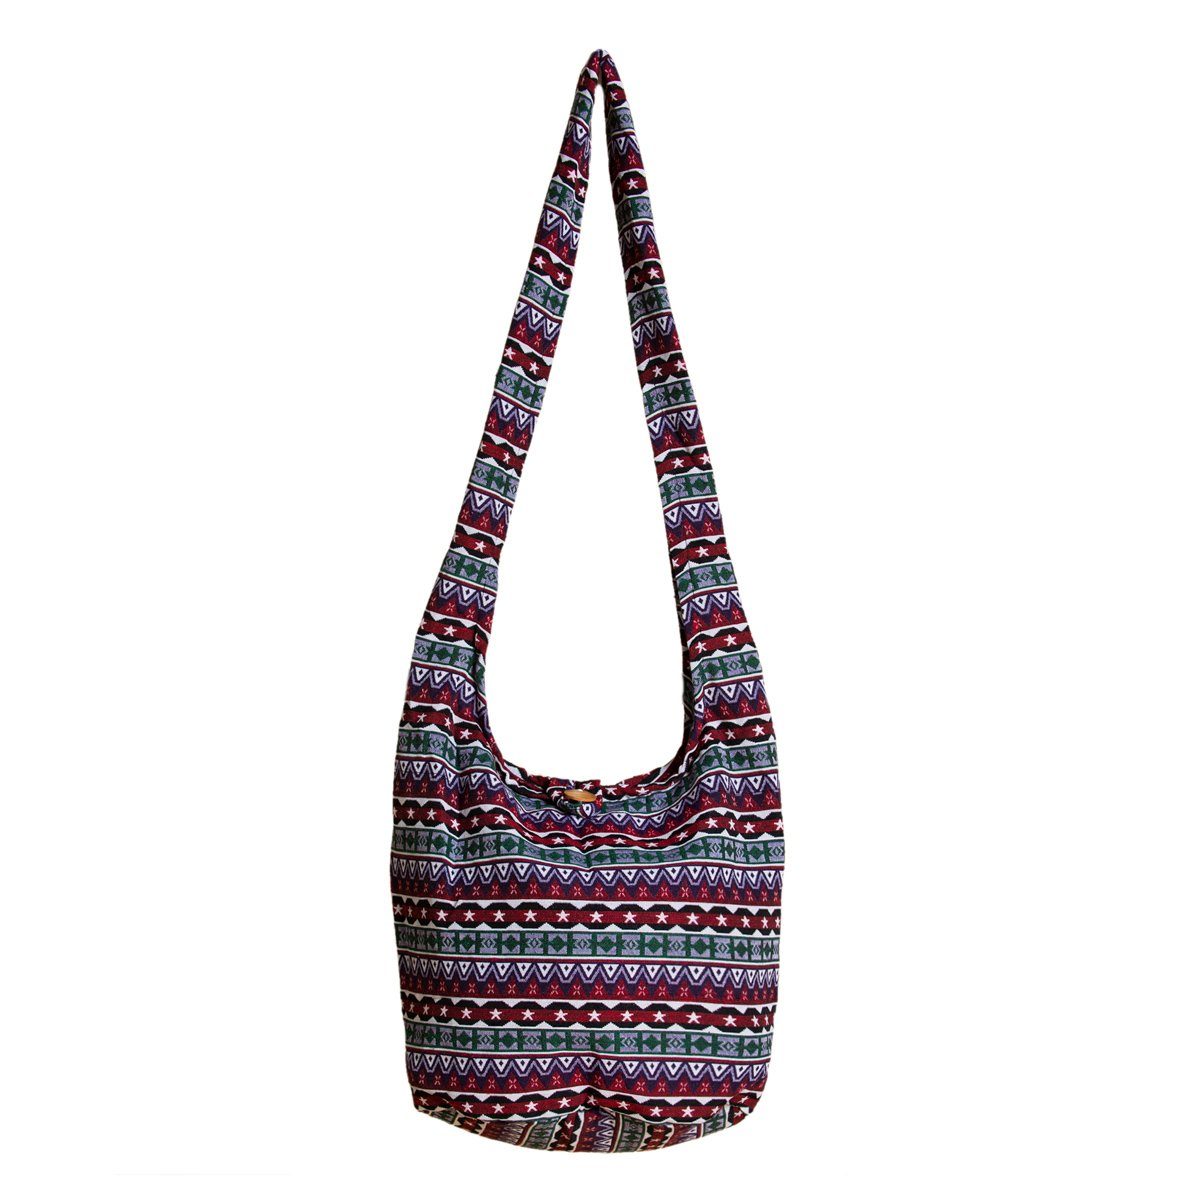 PANASIAM Strandtasche Schulterbeutel in gewebten Designs aus 100 % Baumwolle Umhängetasche, In 2 Größen Beuteltasche auch als Wickeltasche und Handtasche geeignet Bordeauxrotton